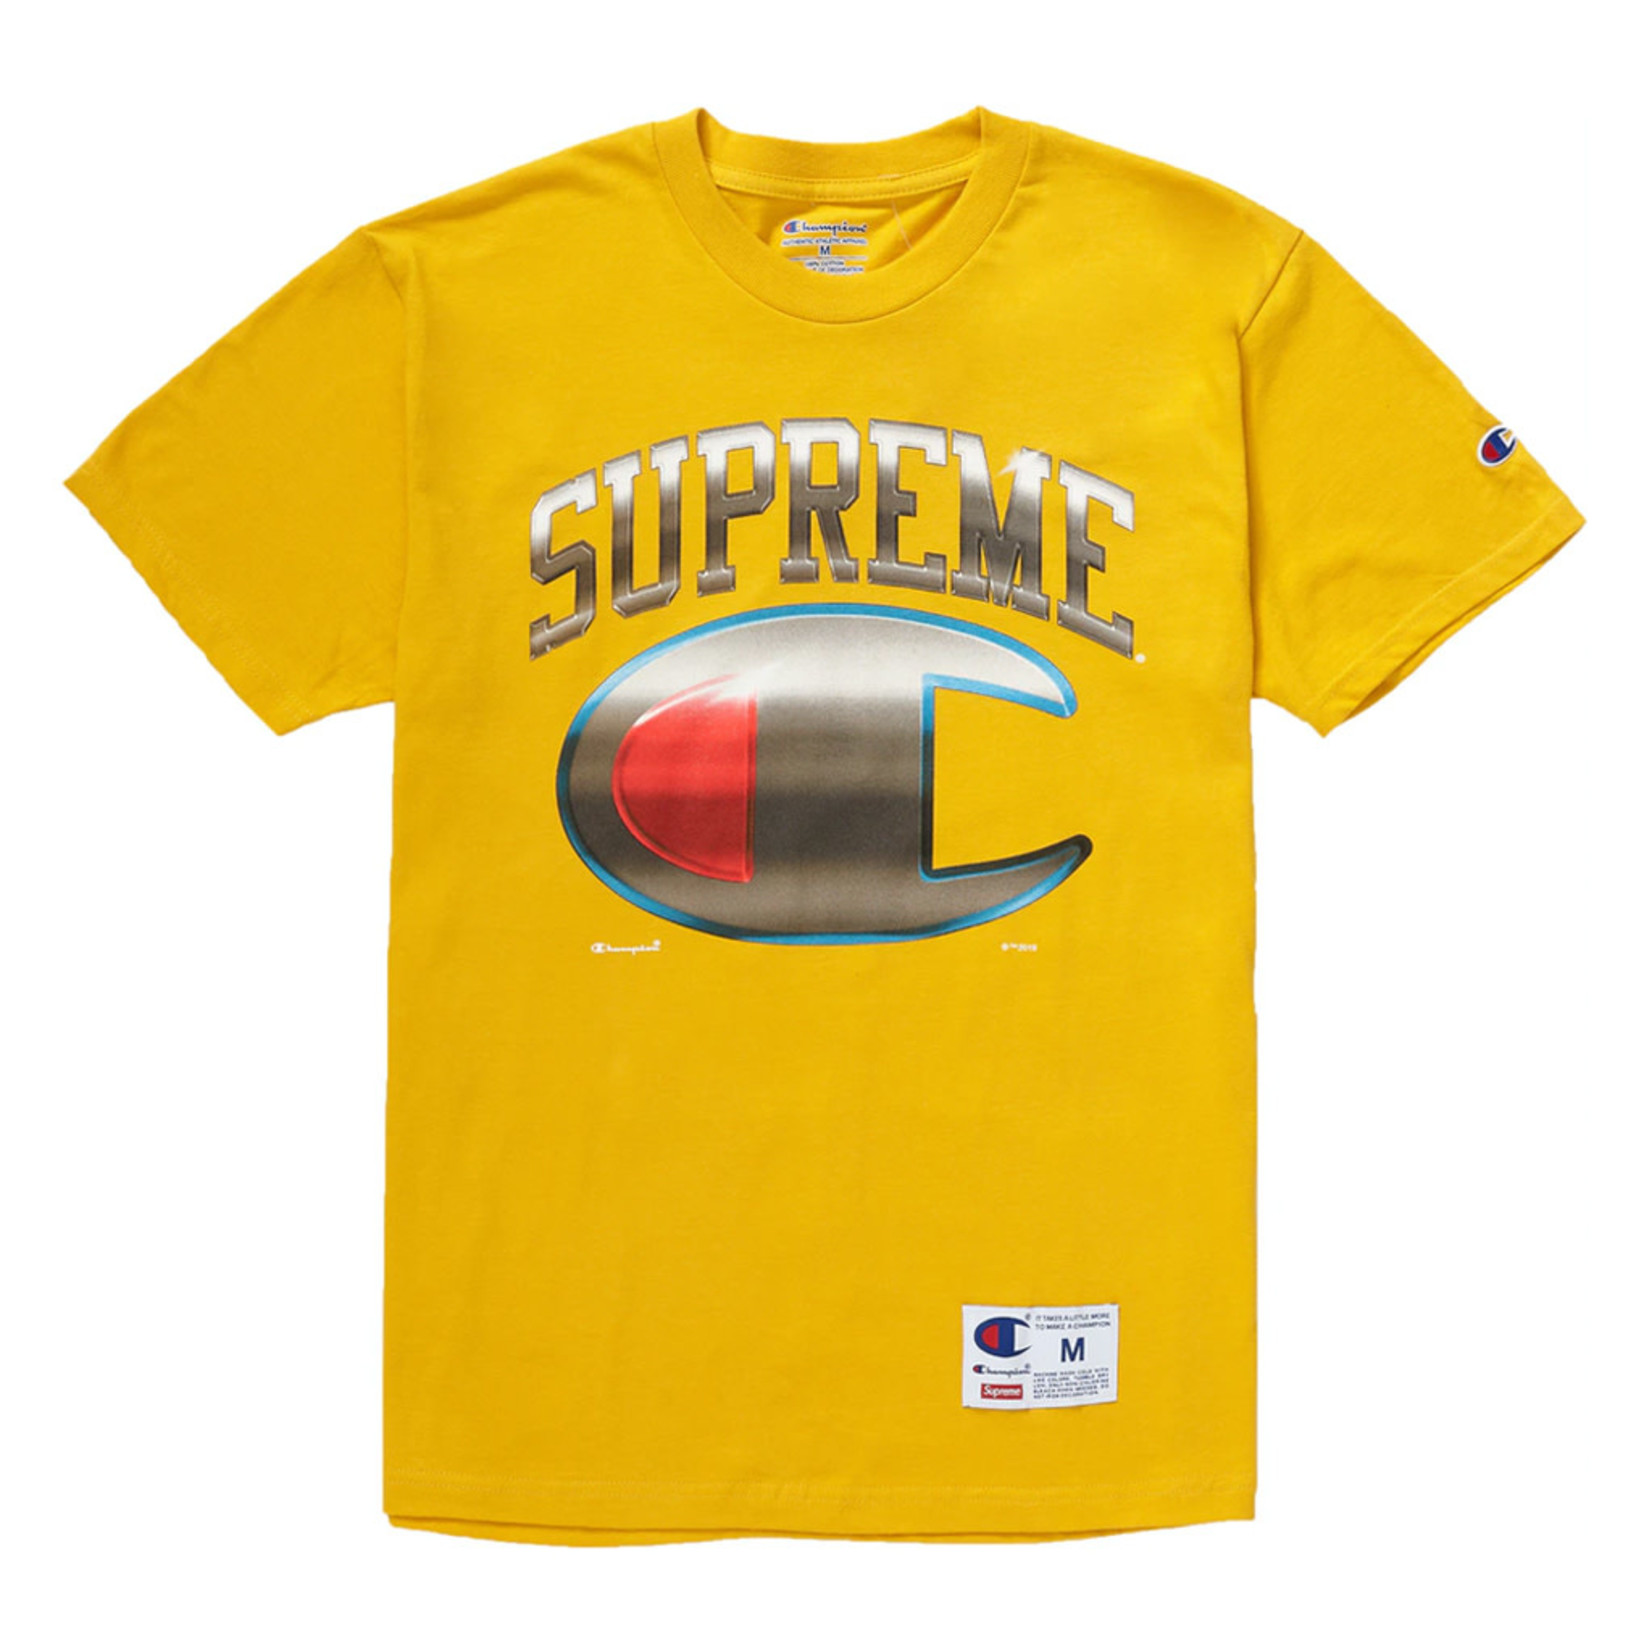 Supreme Supreme Champion Chrome T-Shirt Gold (S)